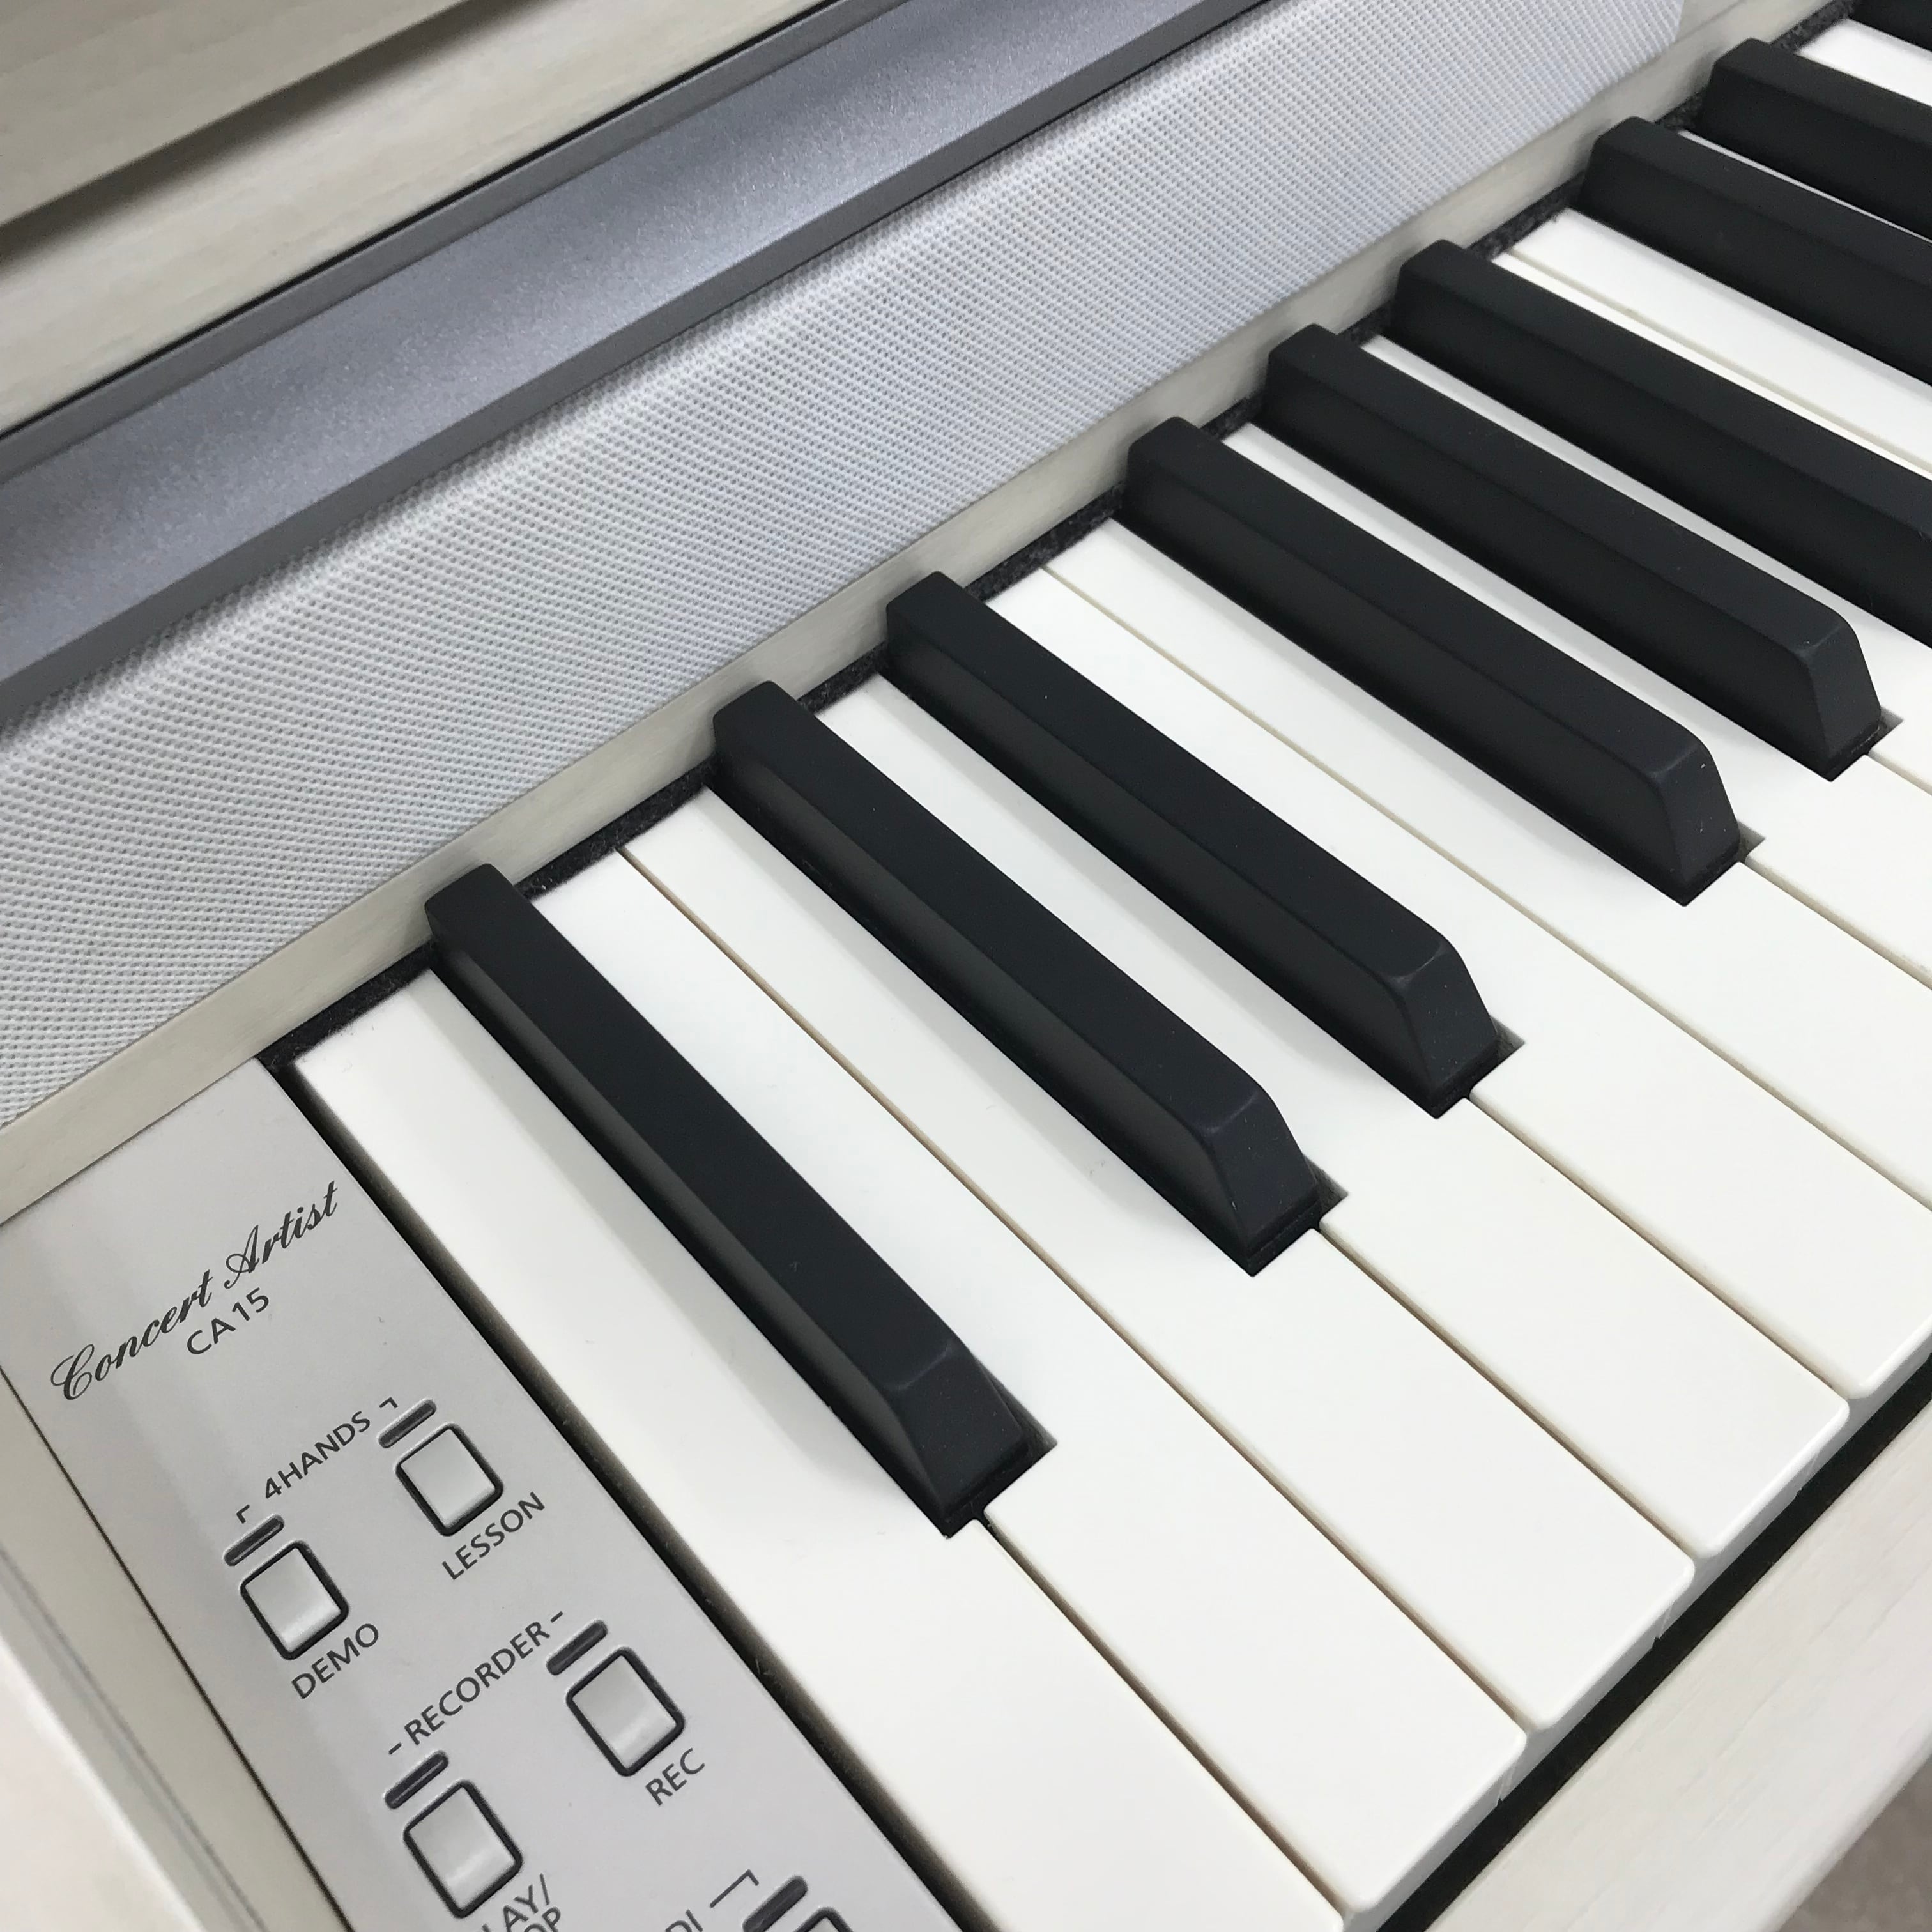 送料込みKAWAI 人気の木製鍵盤 電子ピアノ CA15C 2013年製 超美品